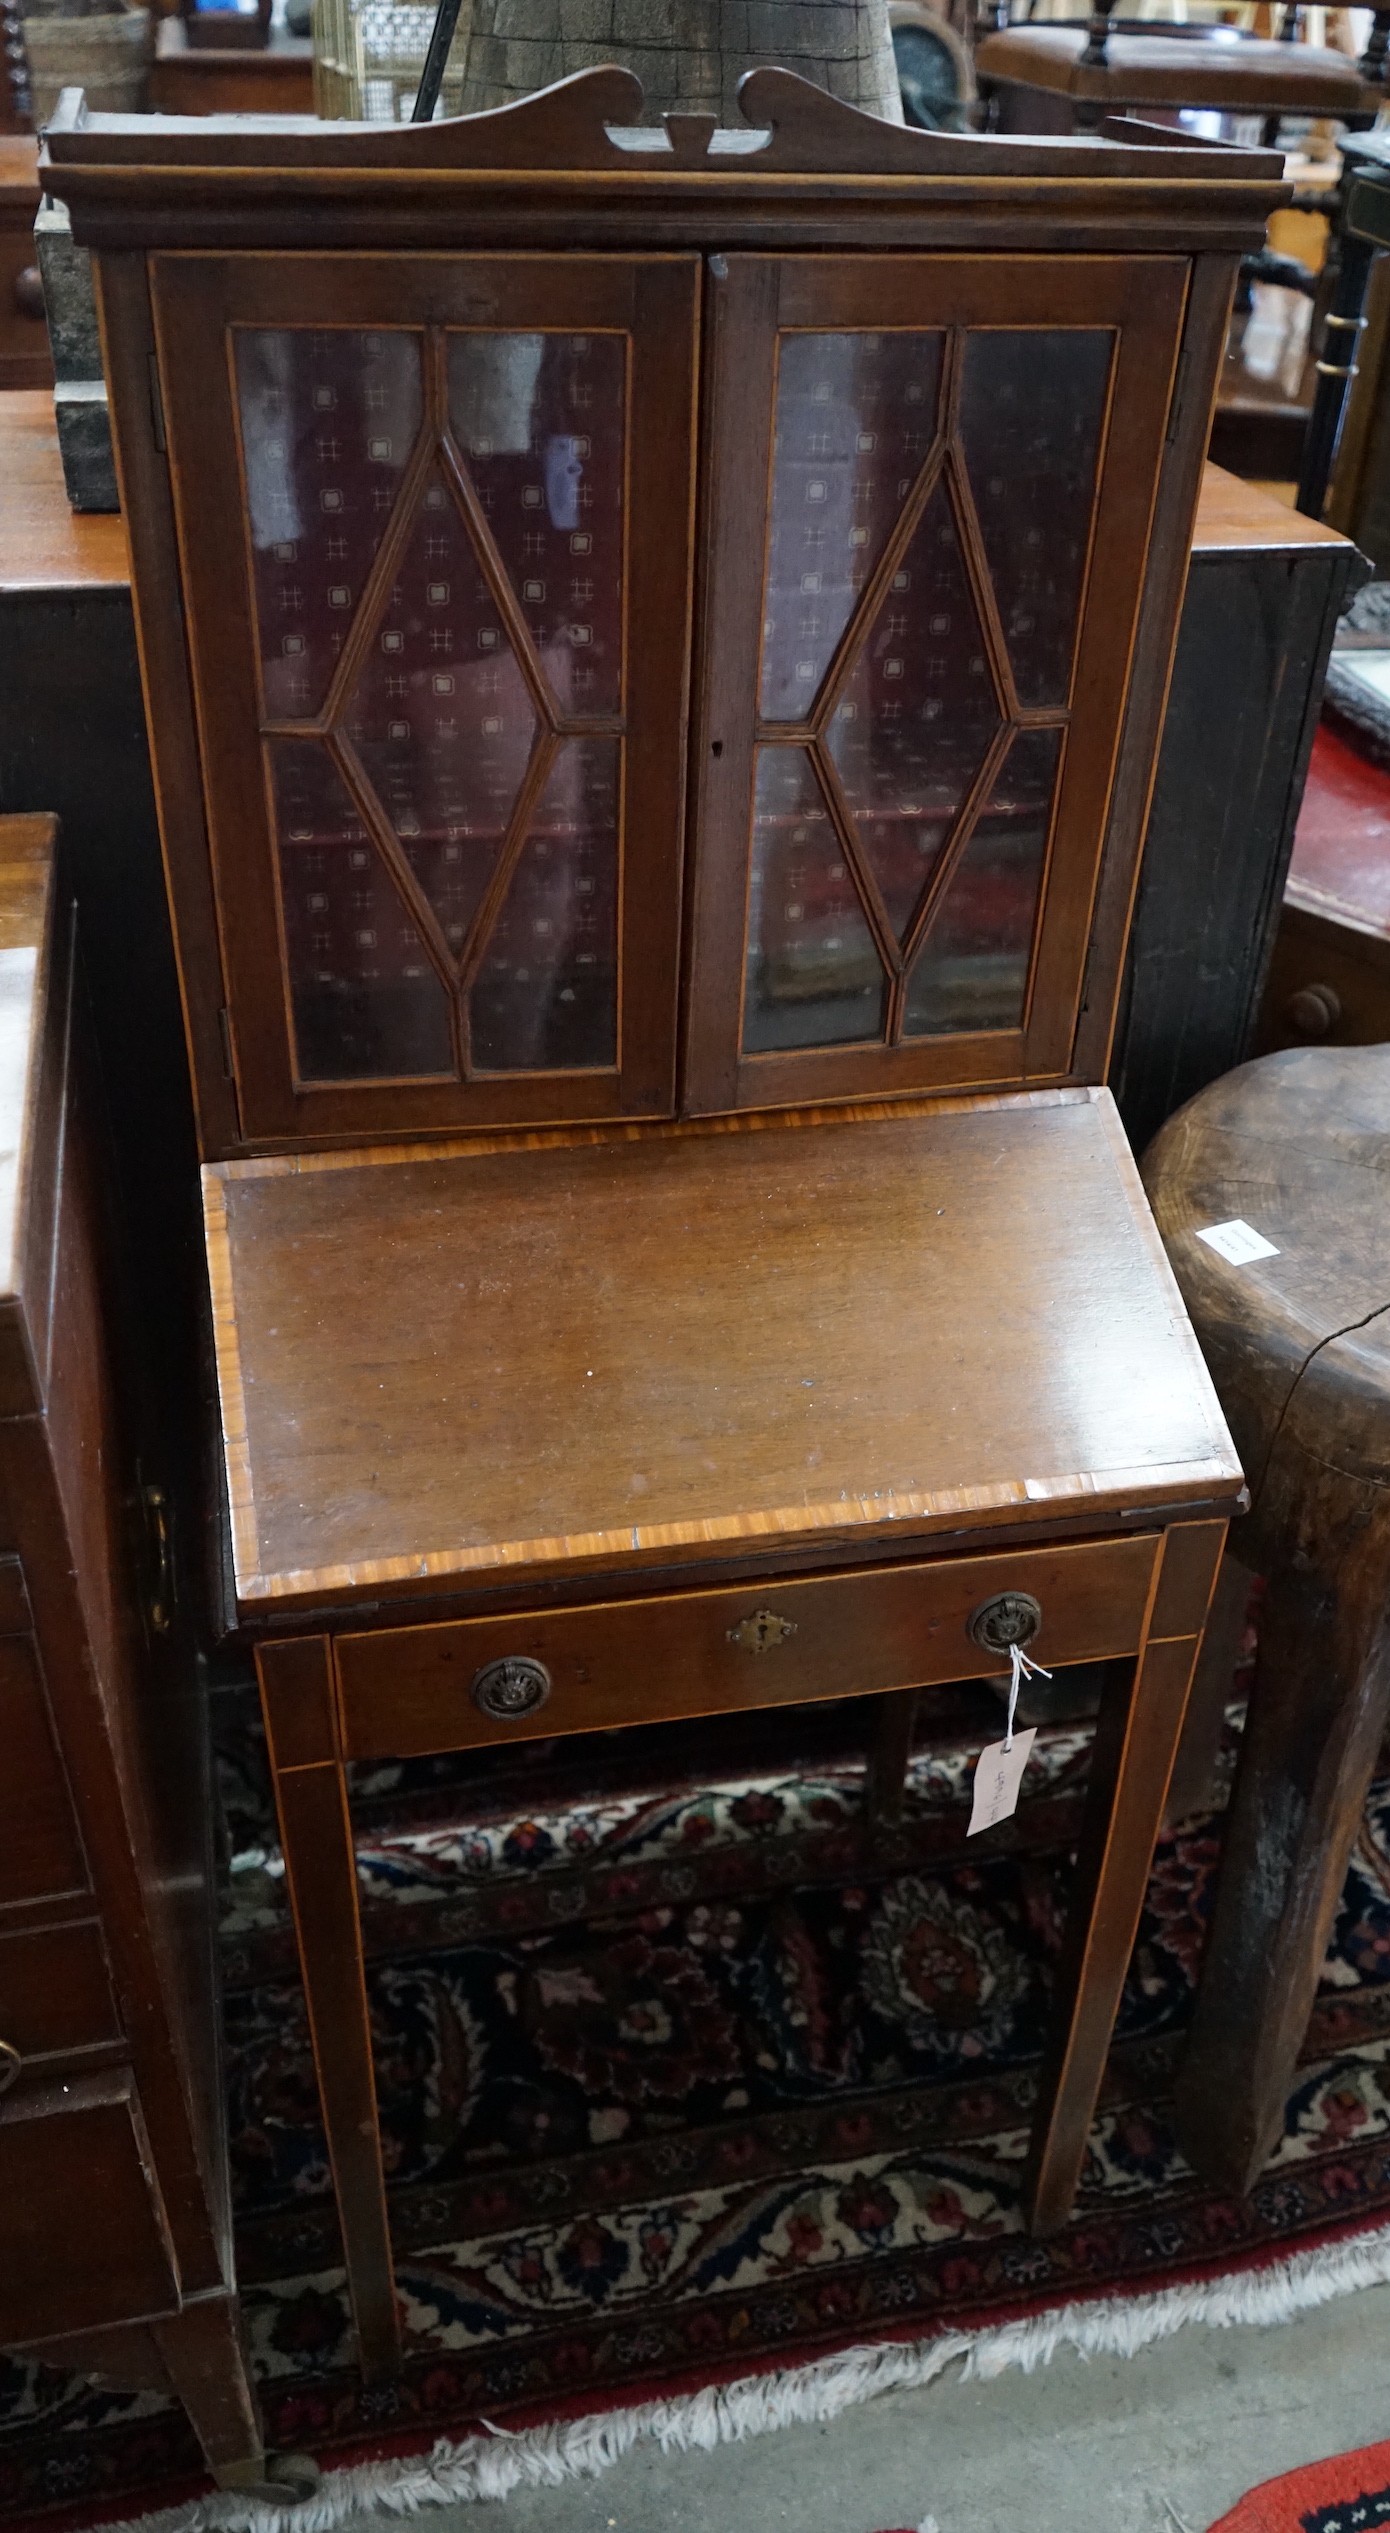 A small Edwardian banded mahogany bureau cabinet, width 52cm, depth 43cm, height 130cm